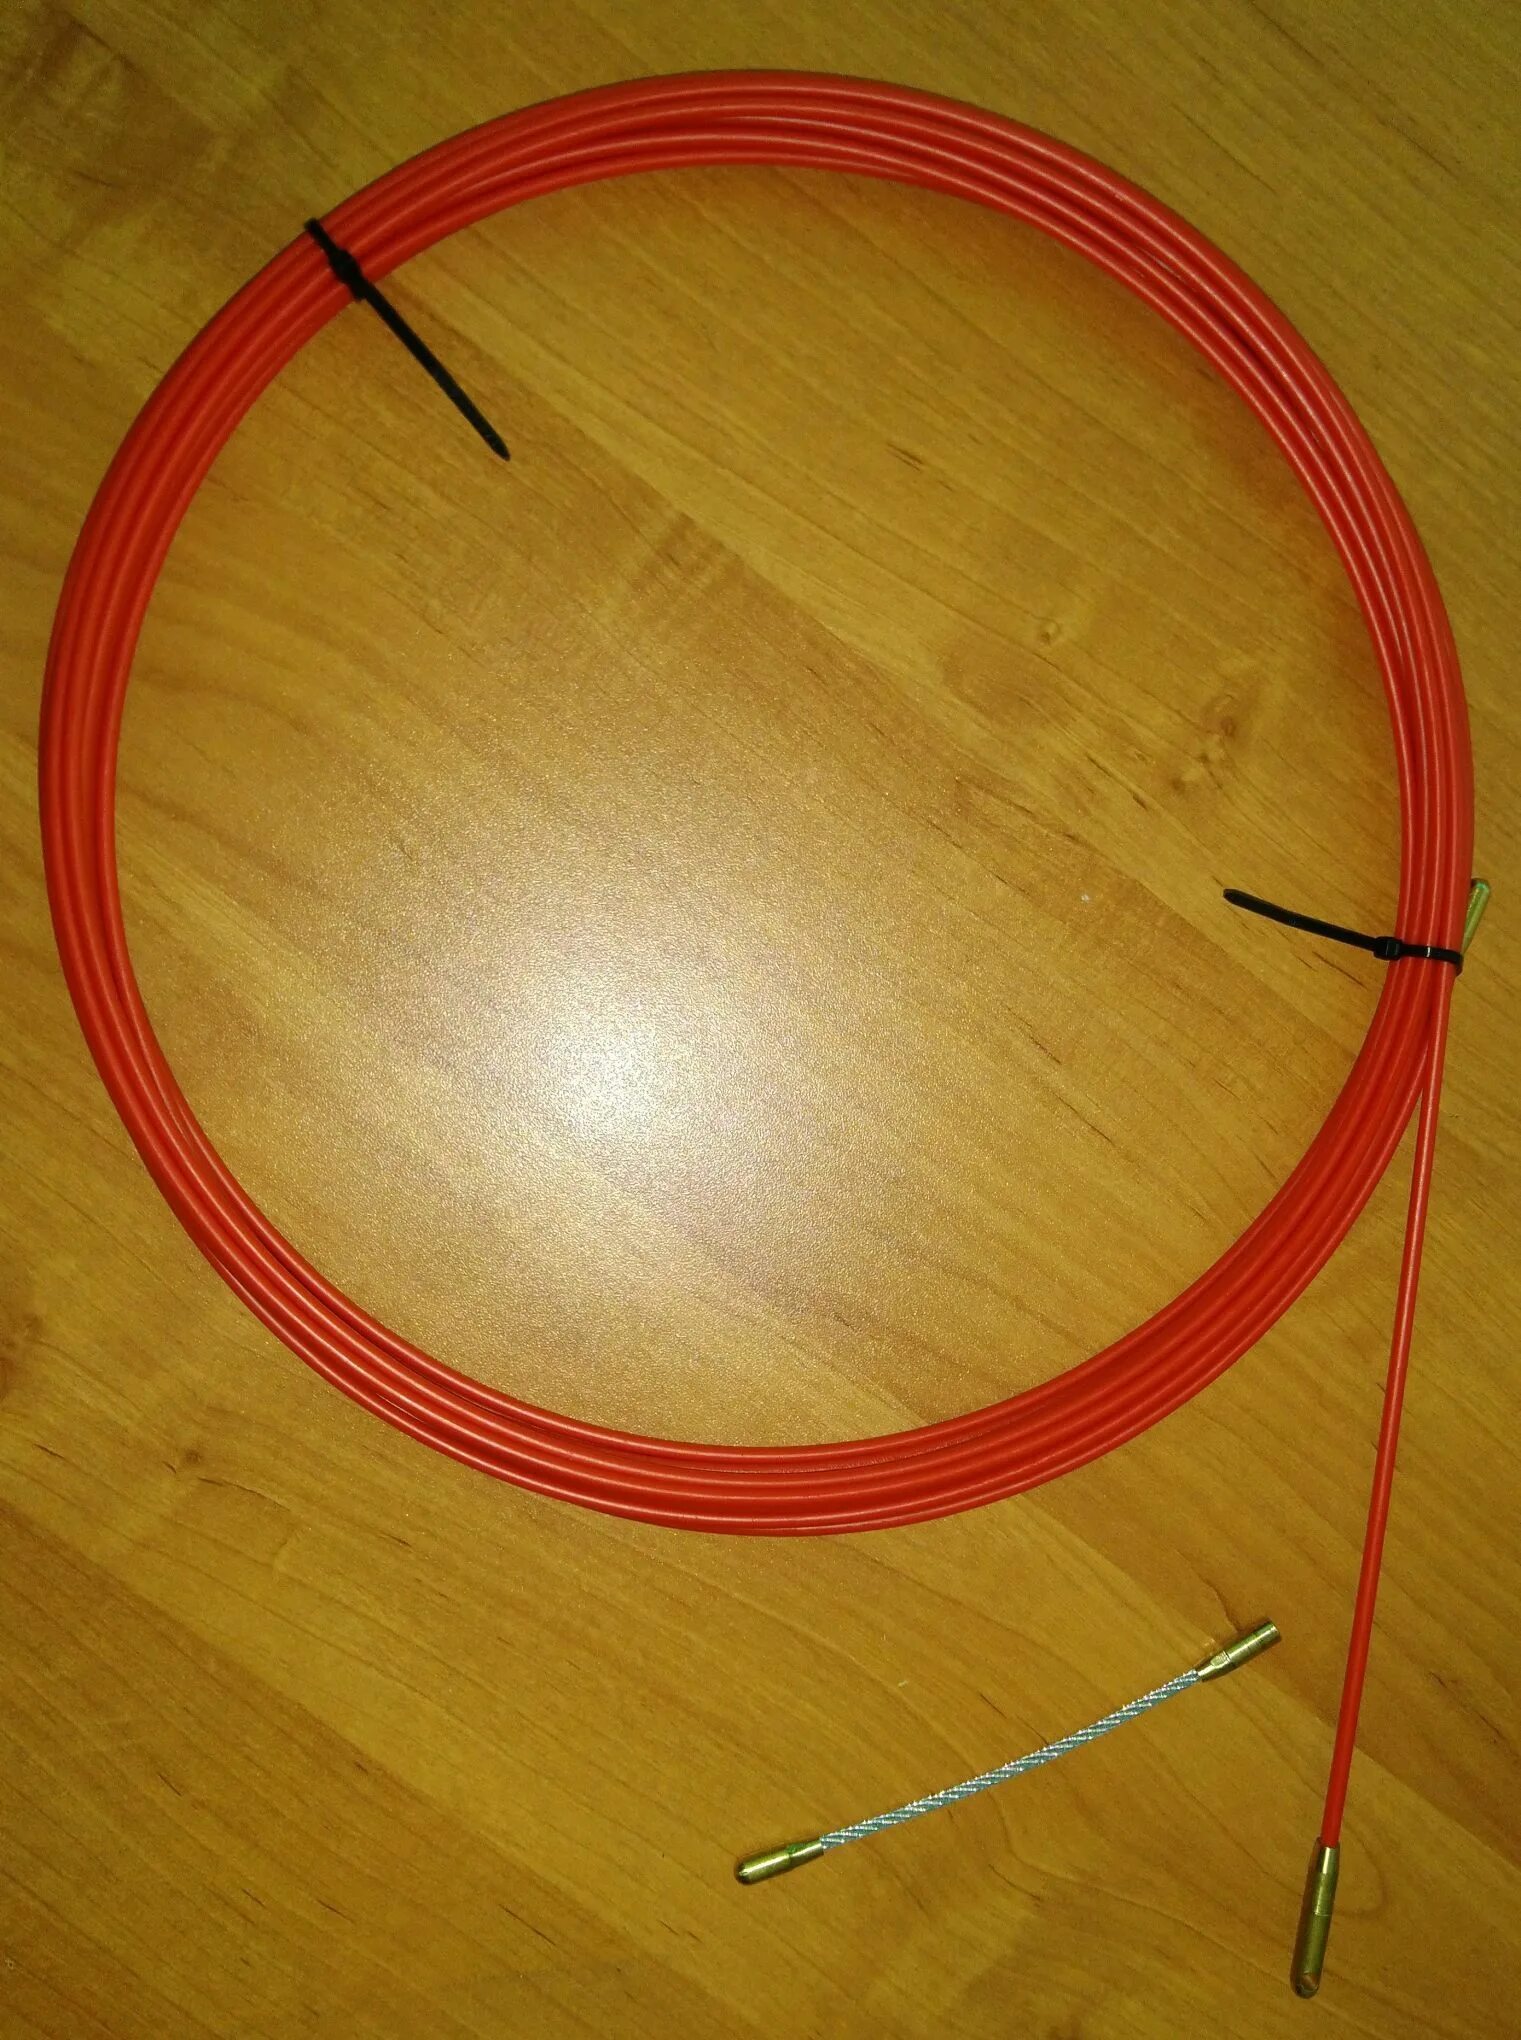 Протяжка 5 мм. Протяжка кабельная (мини УЗК В бухте), стеклопруток, d=3,5мм, 5м красная. Протяжка кабельная мини УЗК В бухте стеклопруток d 3.5 мм 10 м красная. Протяжка кабельная мини УЗК В бухте стеклопруток d 3.5 мм 15 м красная. Протяжка кабельная 10м мтеклопруток красная Рексант.